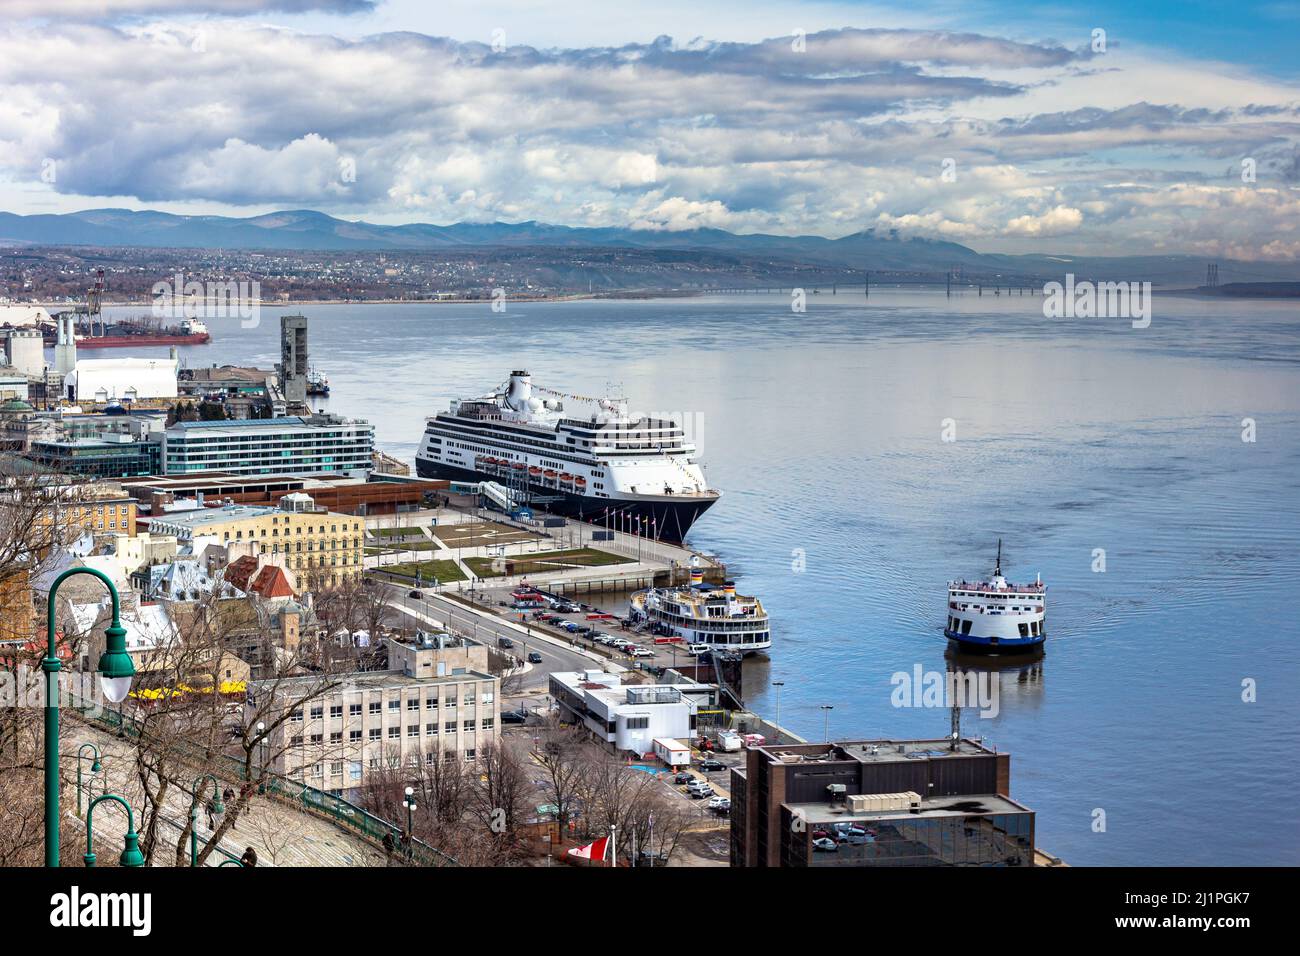 Vue panoramique de la vieille ville de Québec avec bateau de croisière et pont de l'île d'Orléans en arrière-plan, fleuve Saint-Laurent. Banque D'Images